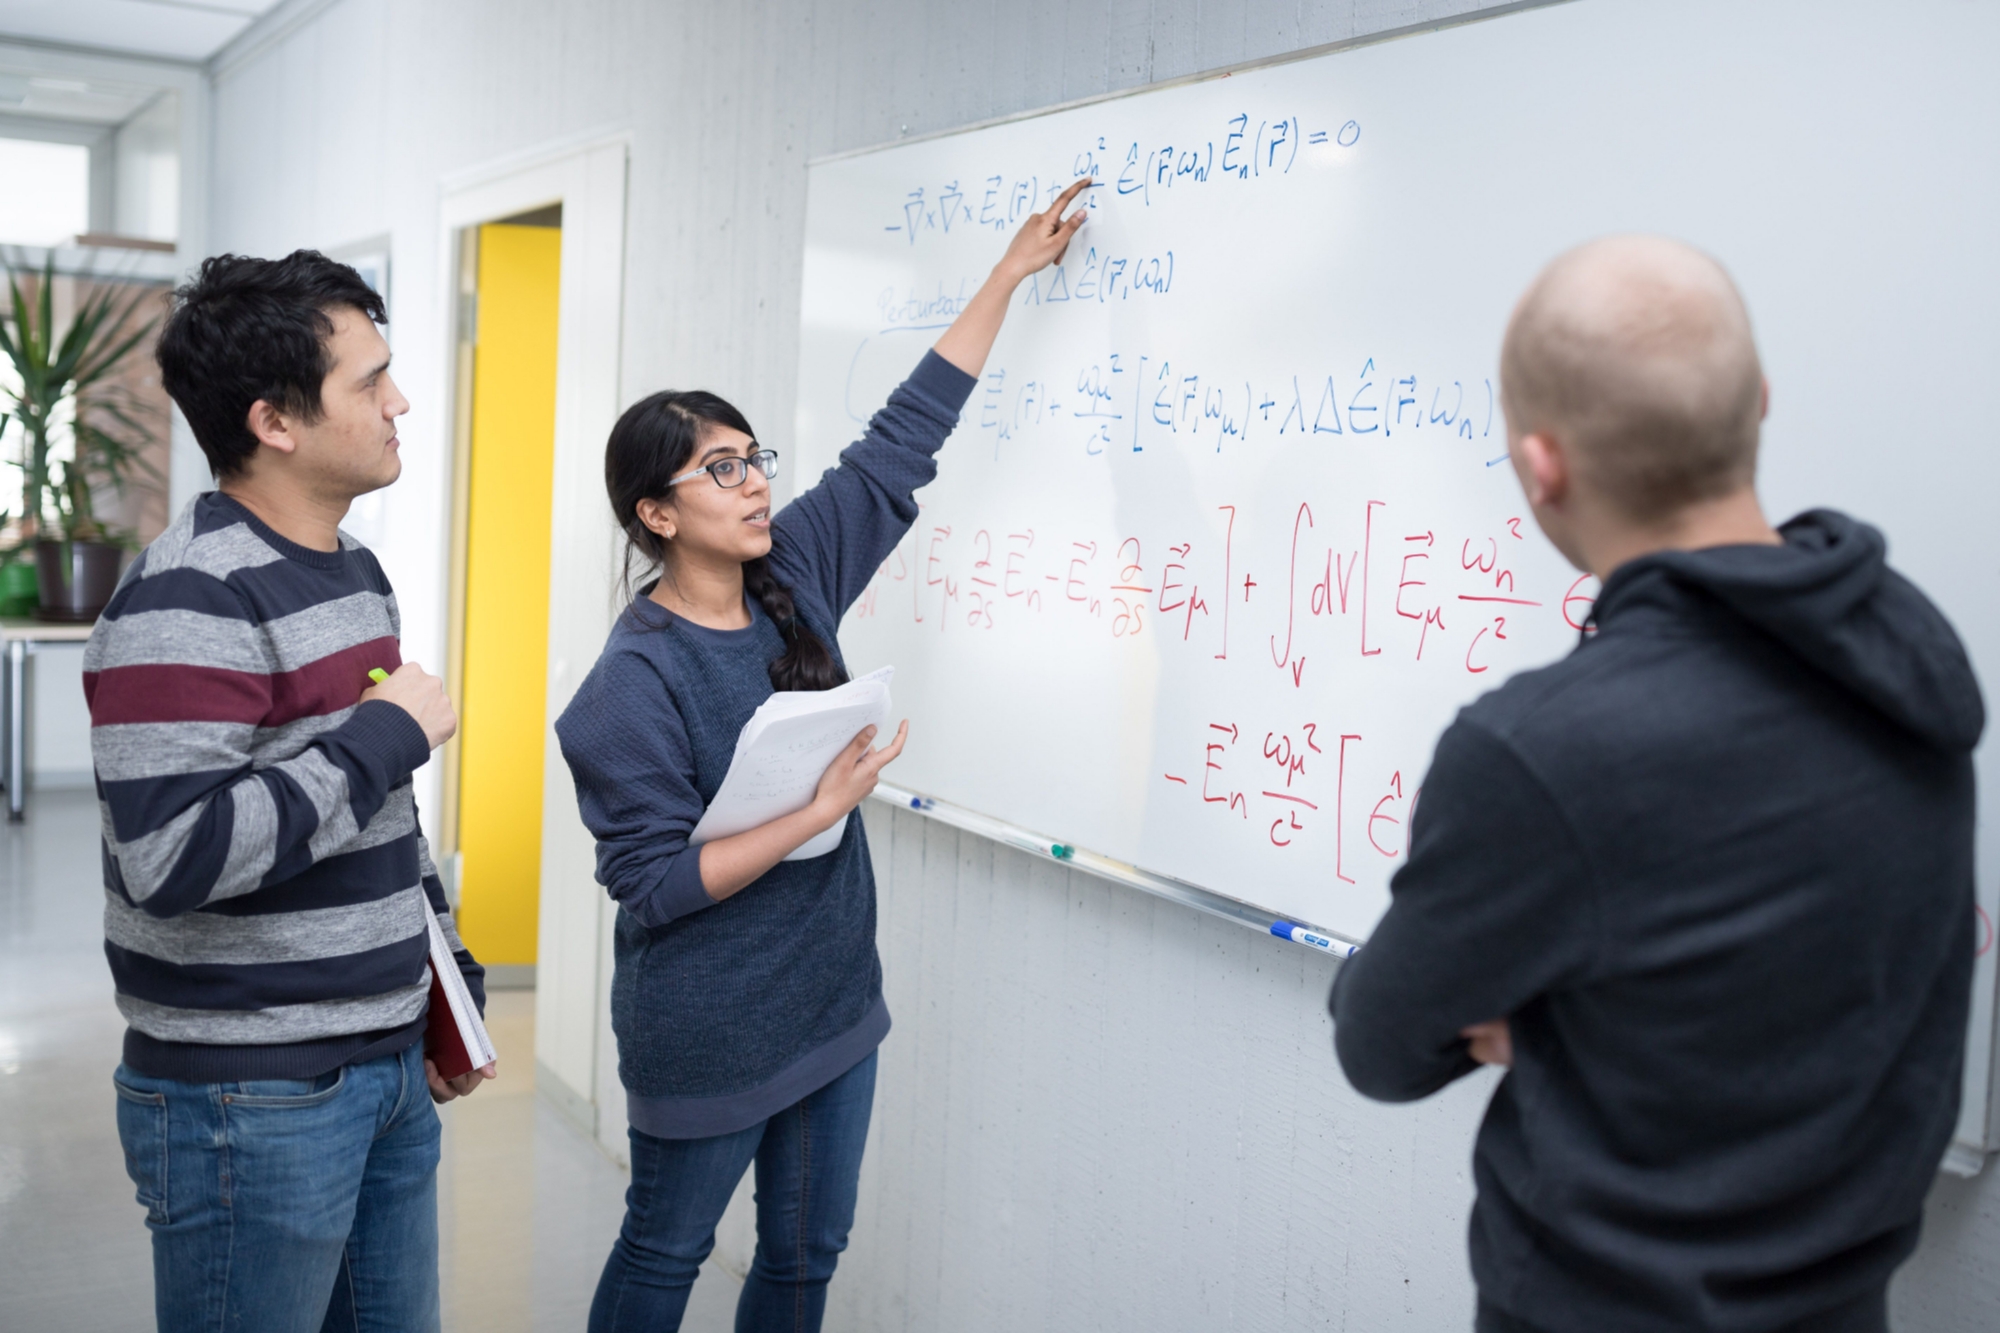 Nachwuchswissenschaftler*innen vor einer Tafel bei der Erläuterung einer mathematischen Formel.